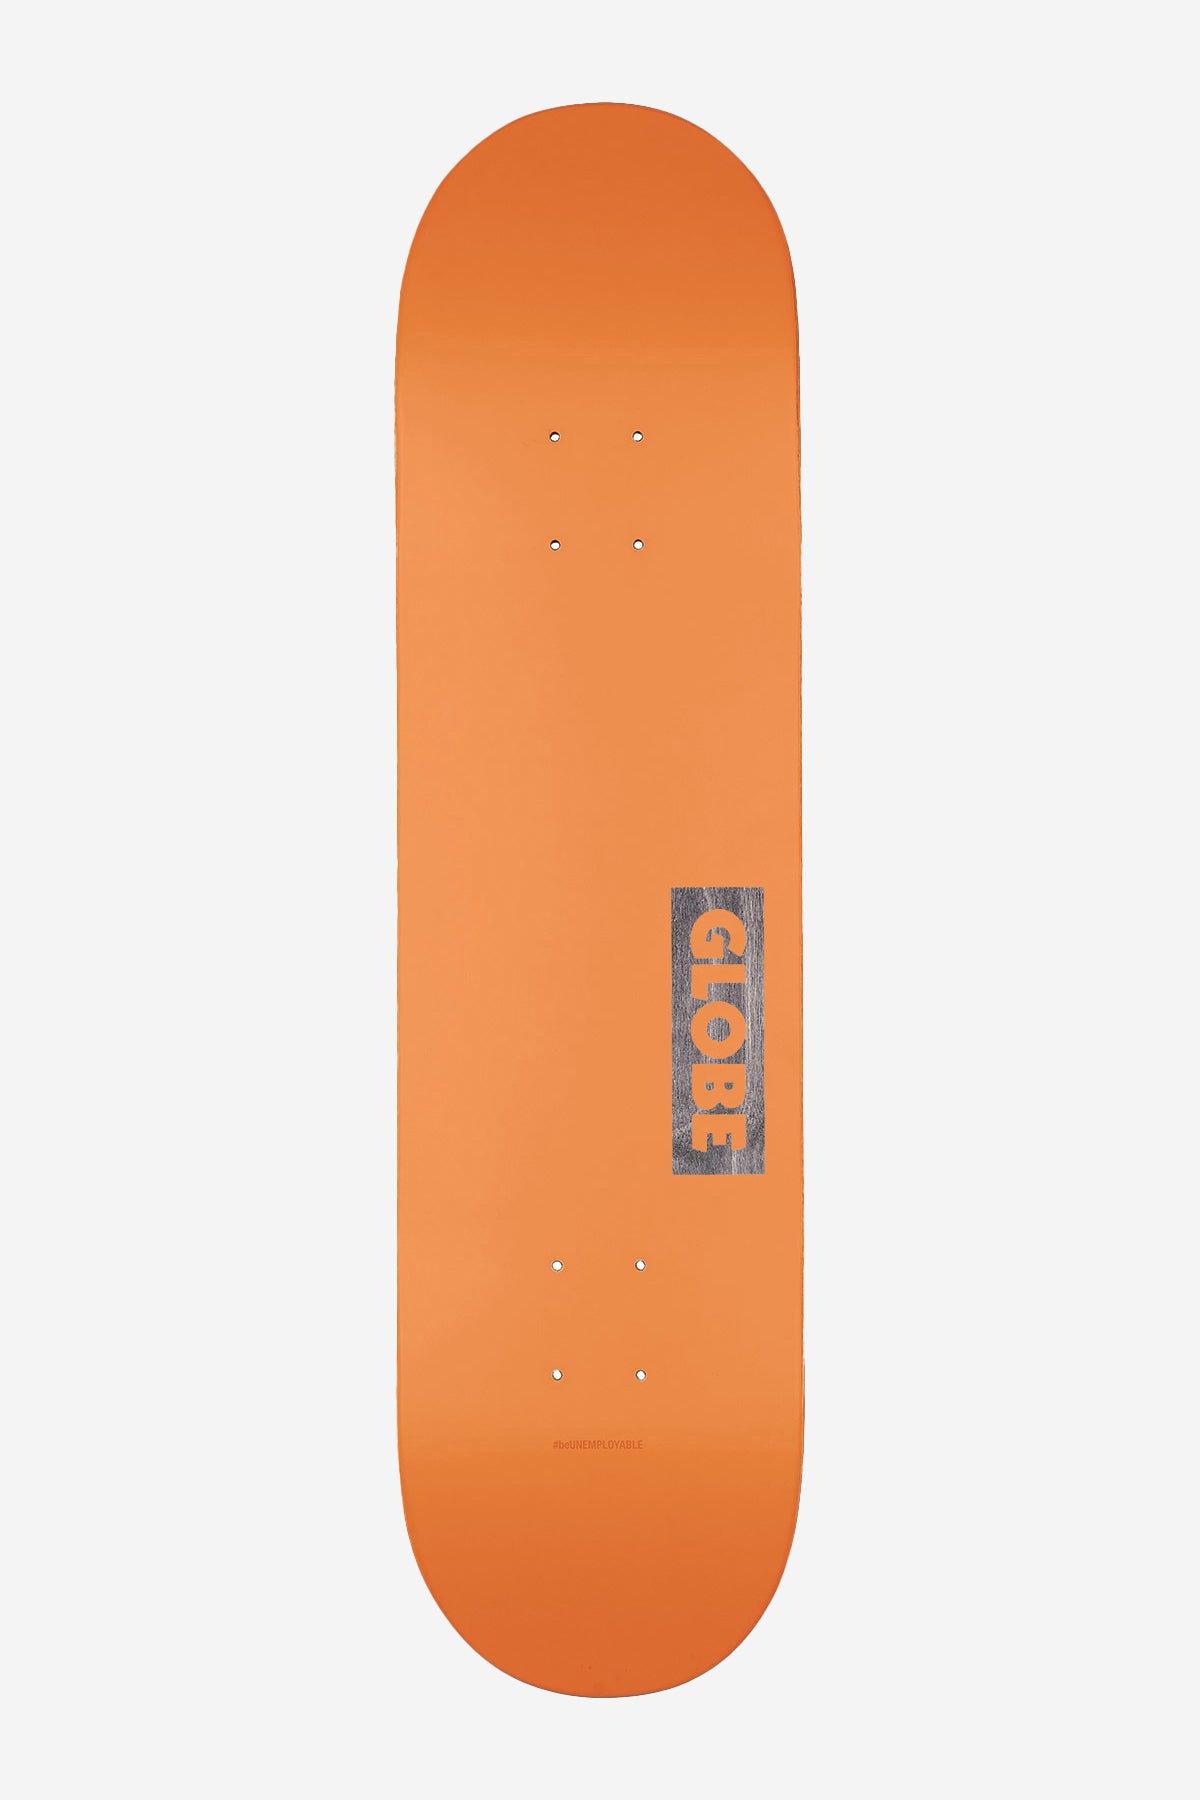 Globe - Gutstock - Neon Orange - 8.125" Skateboard Deck